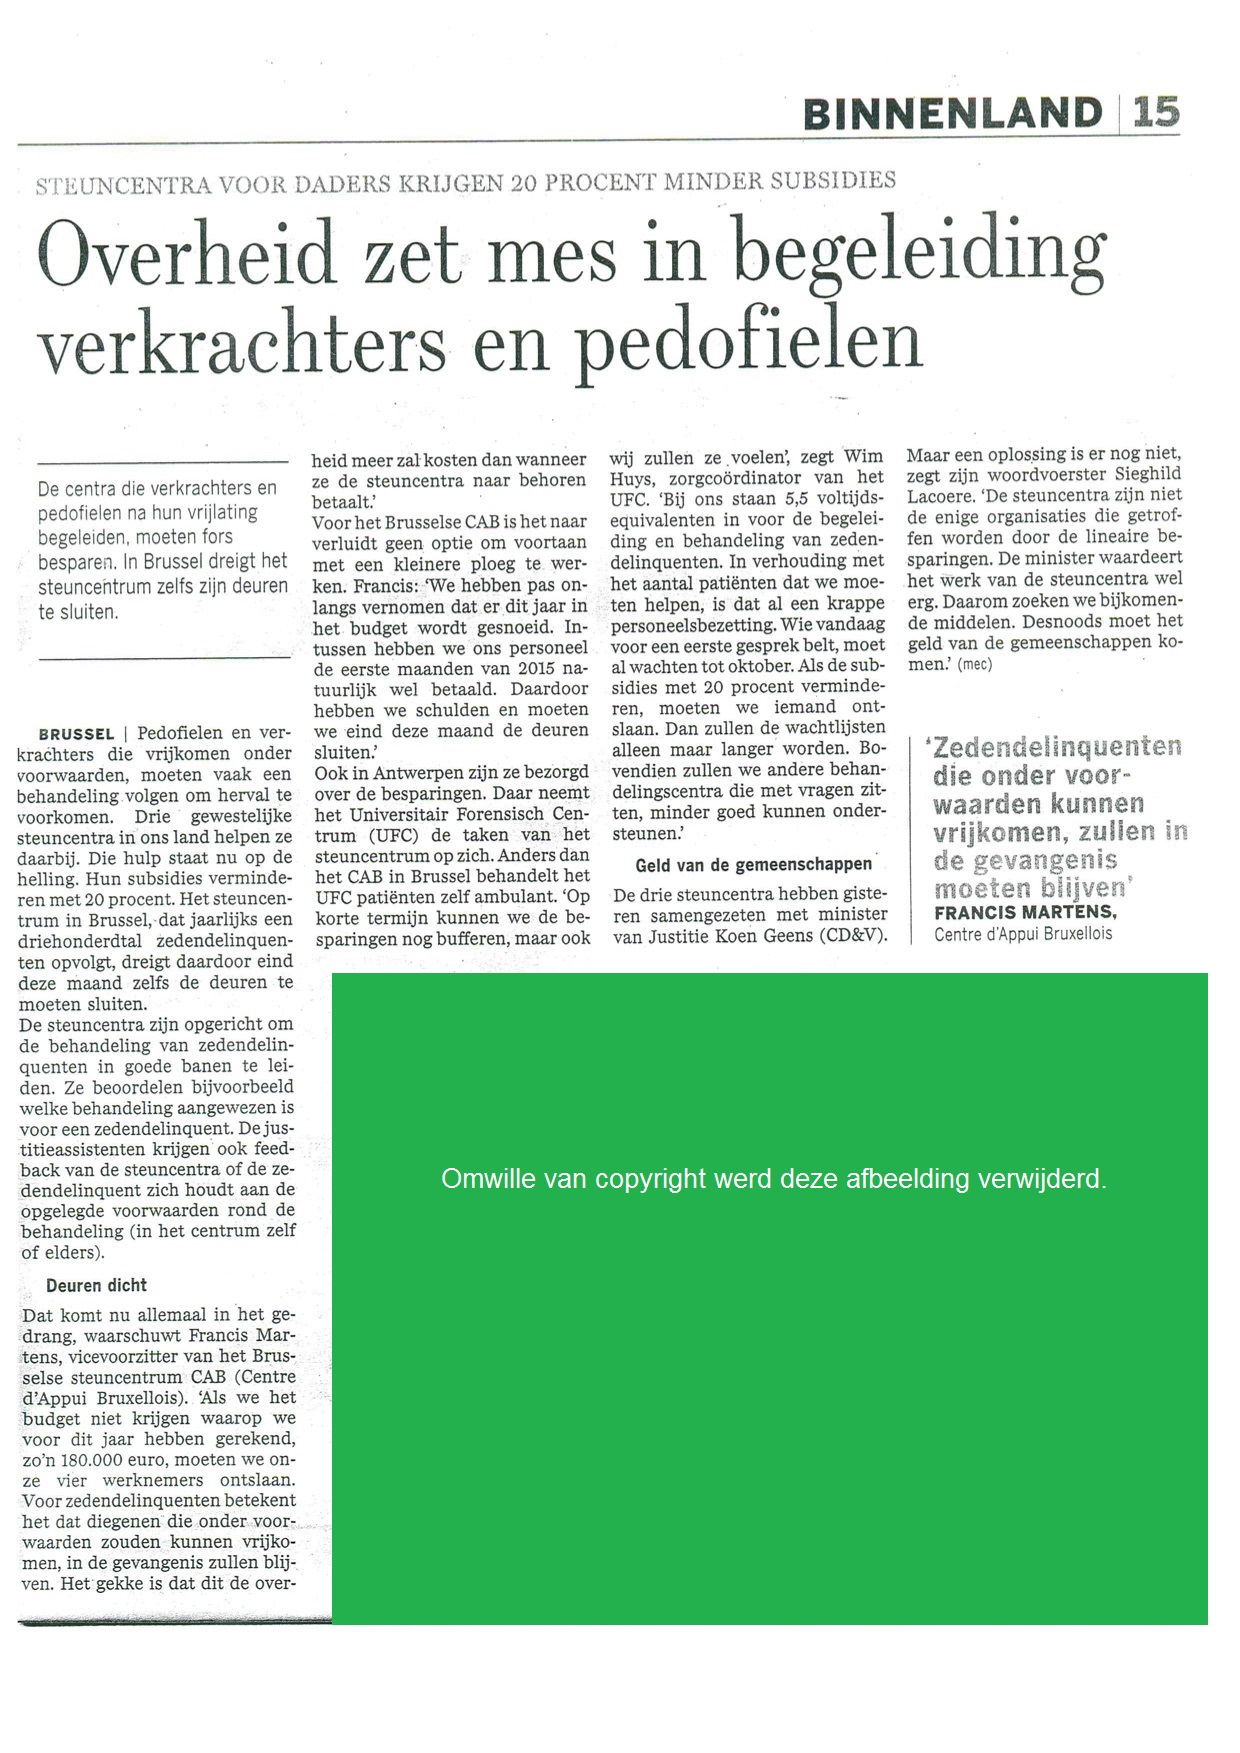 Krantenartikel DeStandaard25062015 Overheid zet mes begel verkrachters pedofielen groen